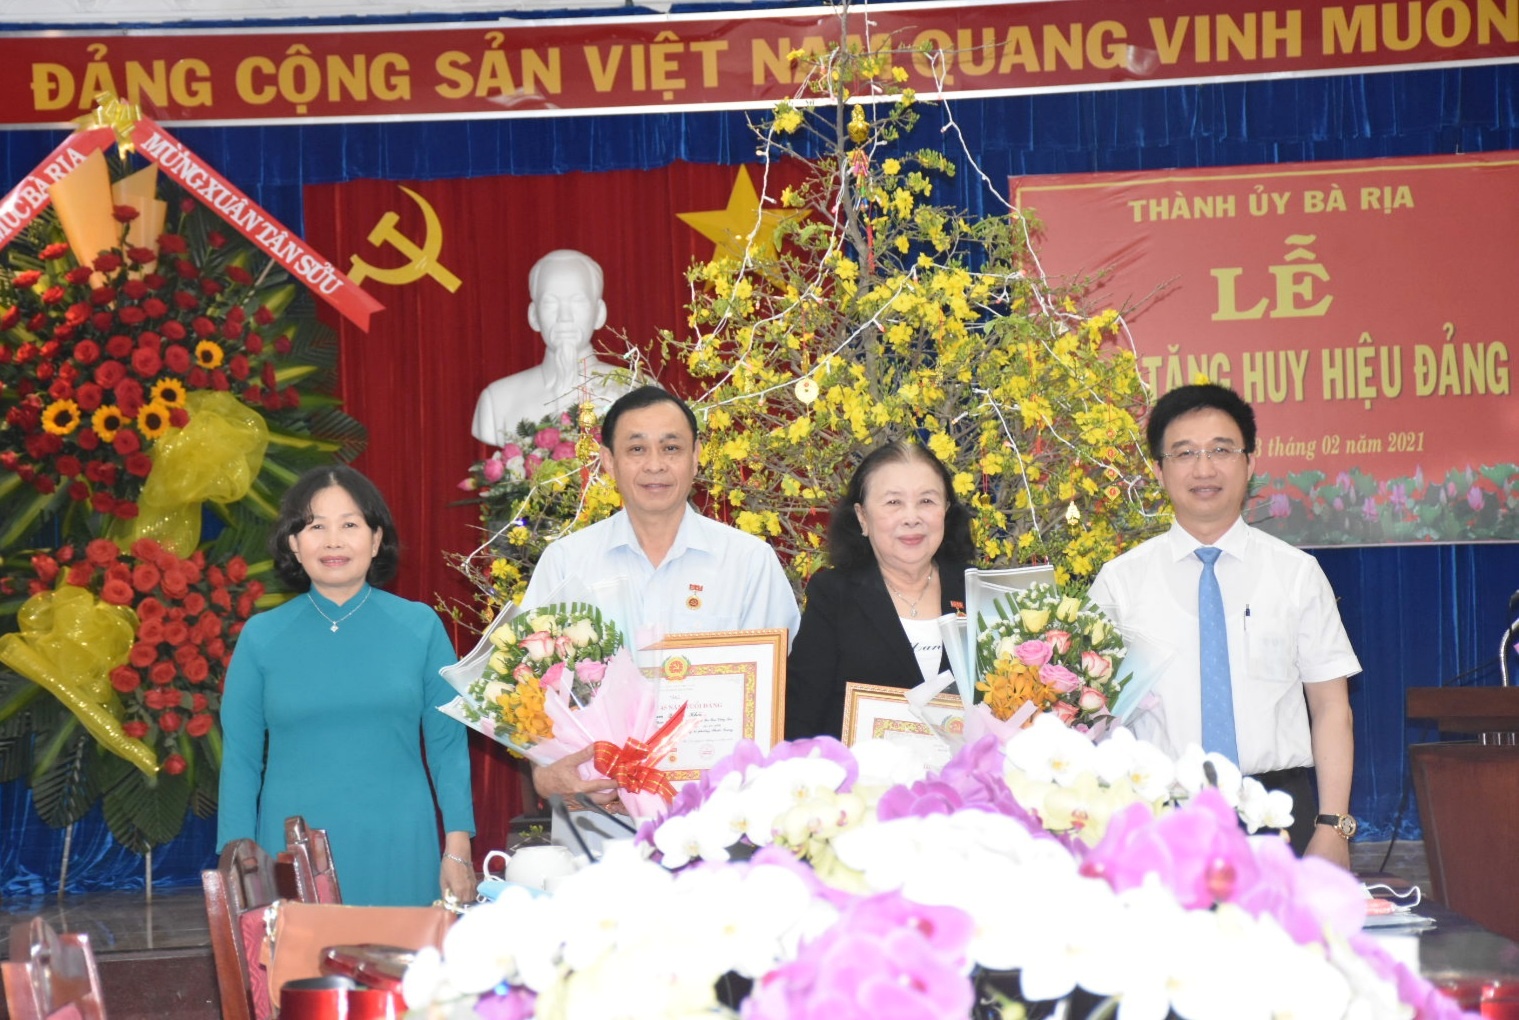 Thành ủy Bà Rịa trao Huy hiệu Đảng cho các đảng viên Báo Bà Rịa Vũng Tàu Online